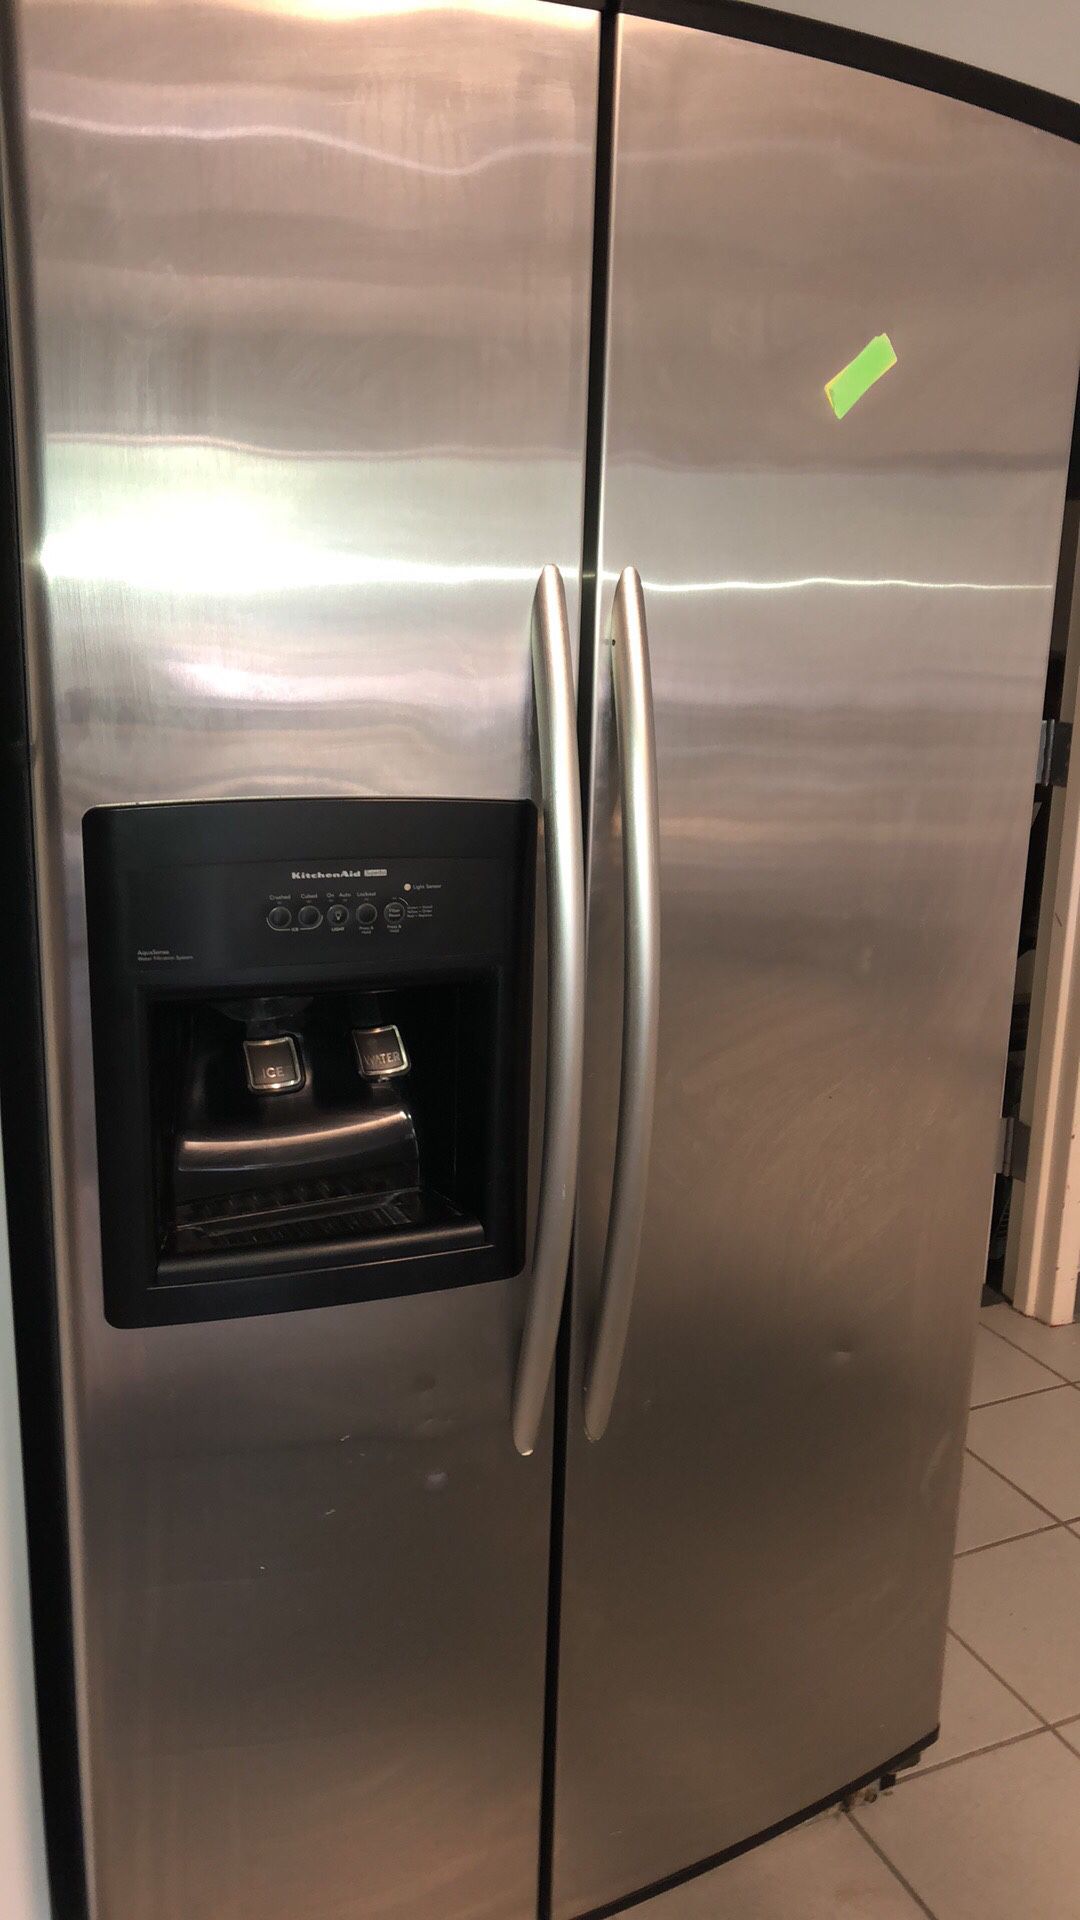 Kitchen aid refrigerator